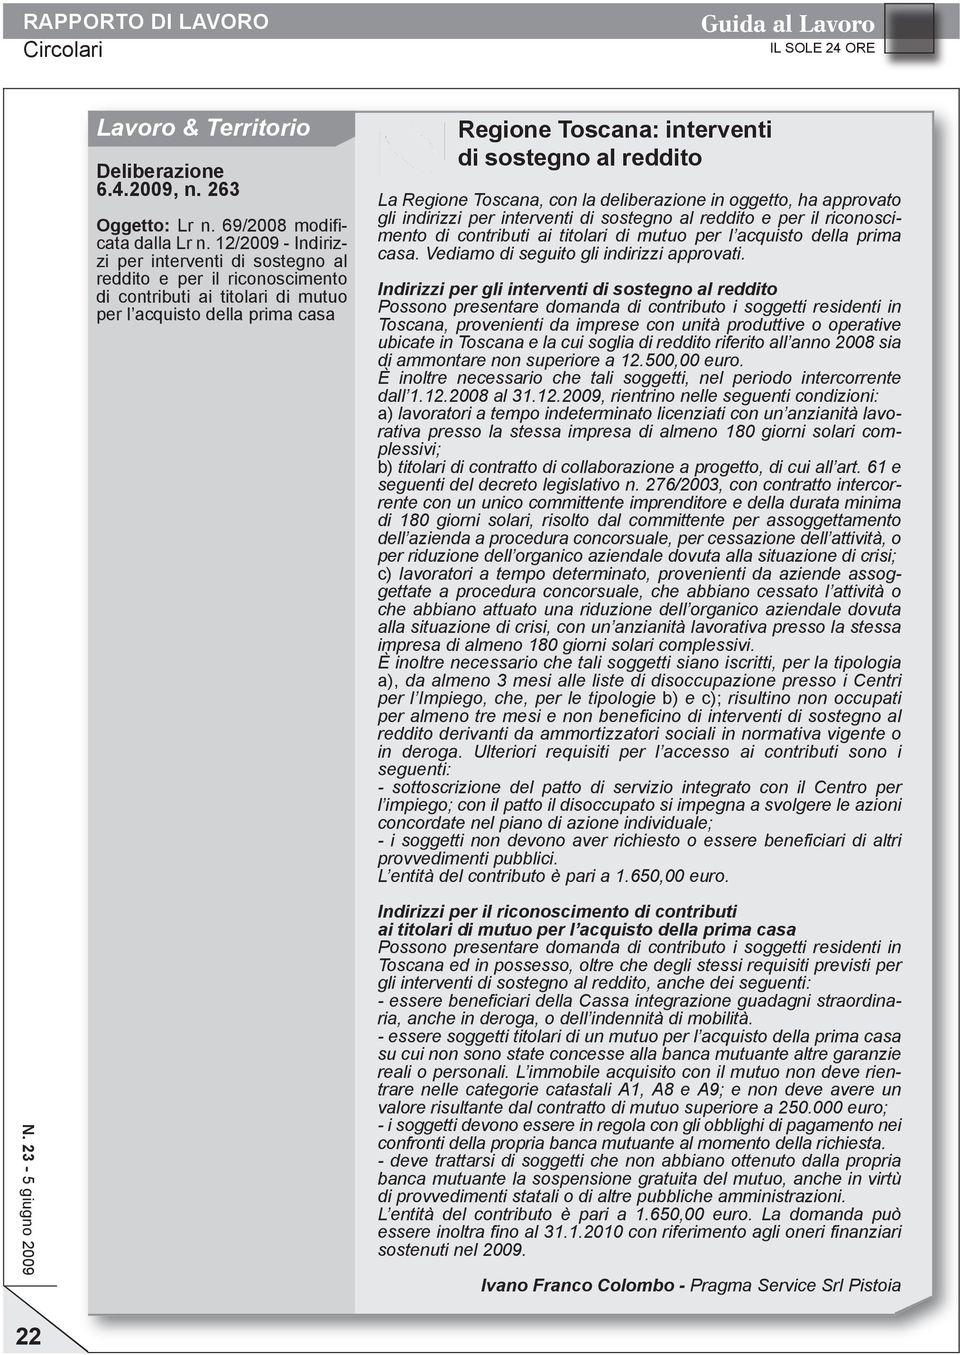 La Regione Toscana, con la deliberazione in oggetto, ha approvato gli indirizzi per interventi di sostegno al reddito e per il riconoscimento di contributi ai titolari di mutuo per l acquisto della